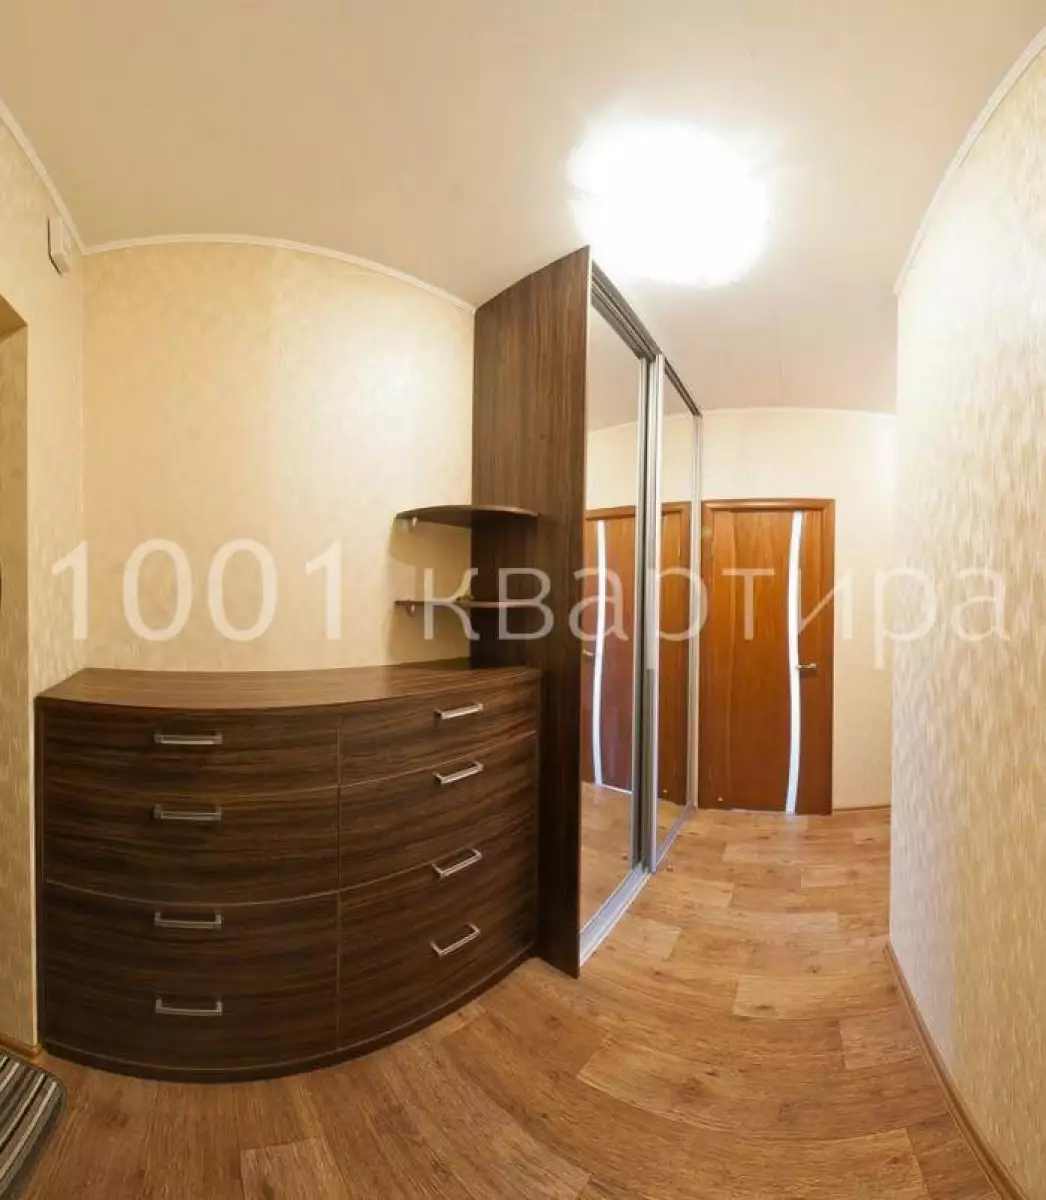 Вариант #126917 для аренды посуточно в Новосибирске Геодезическая, д.5/1 на 4 гостей - фото 4